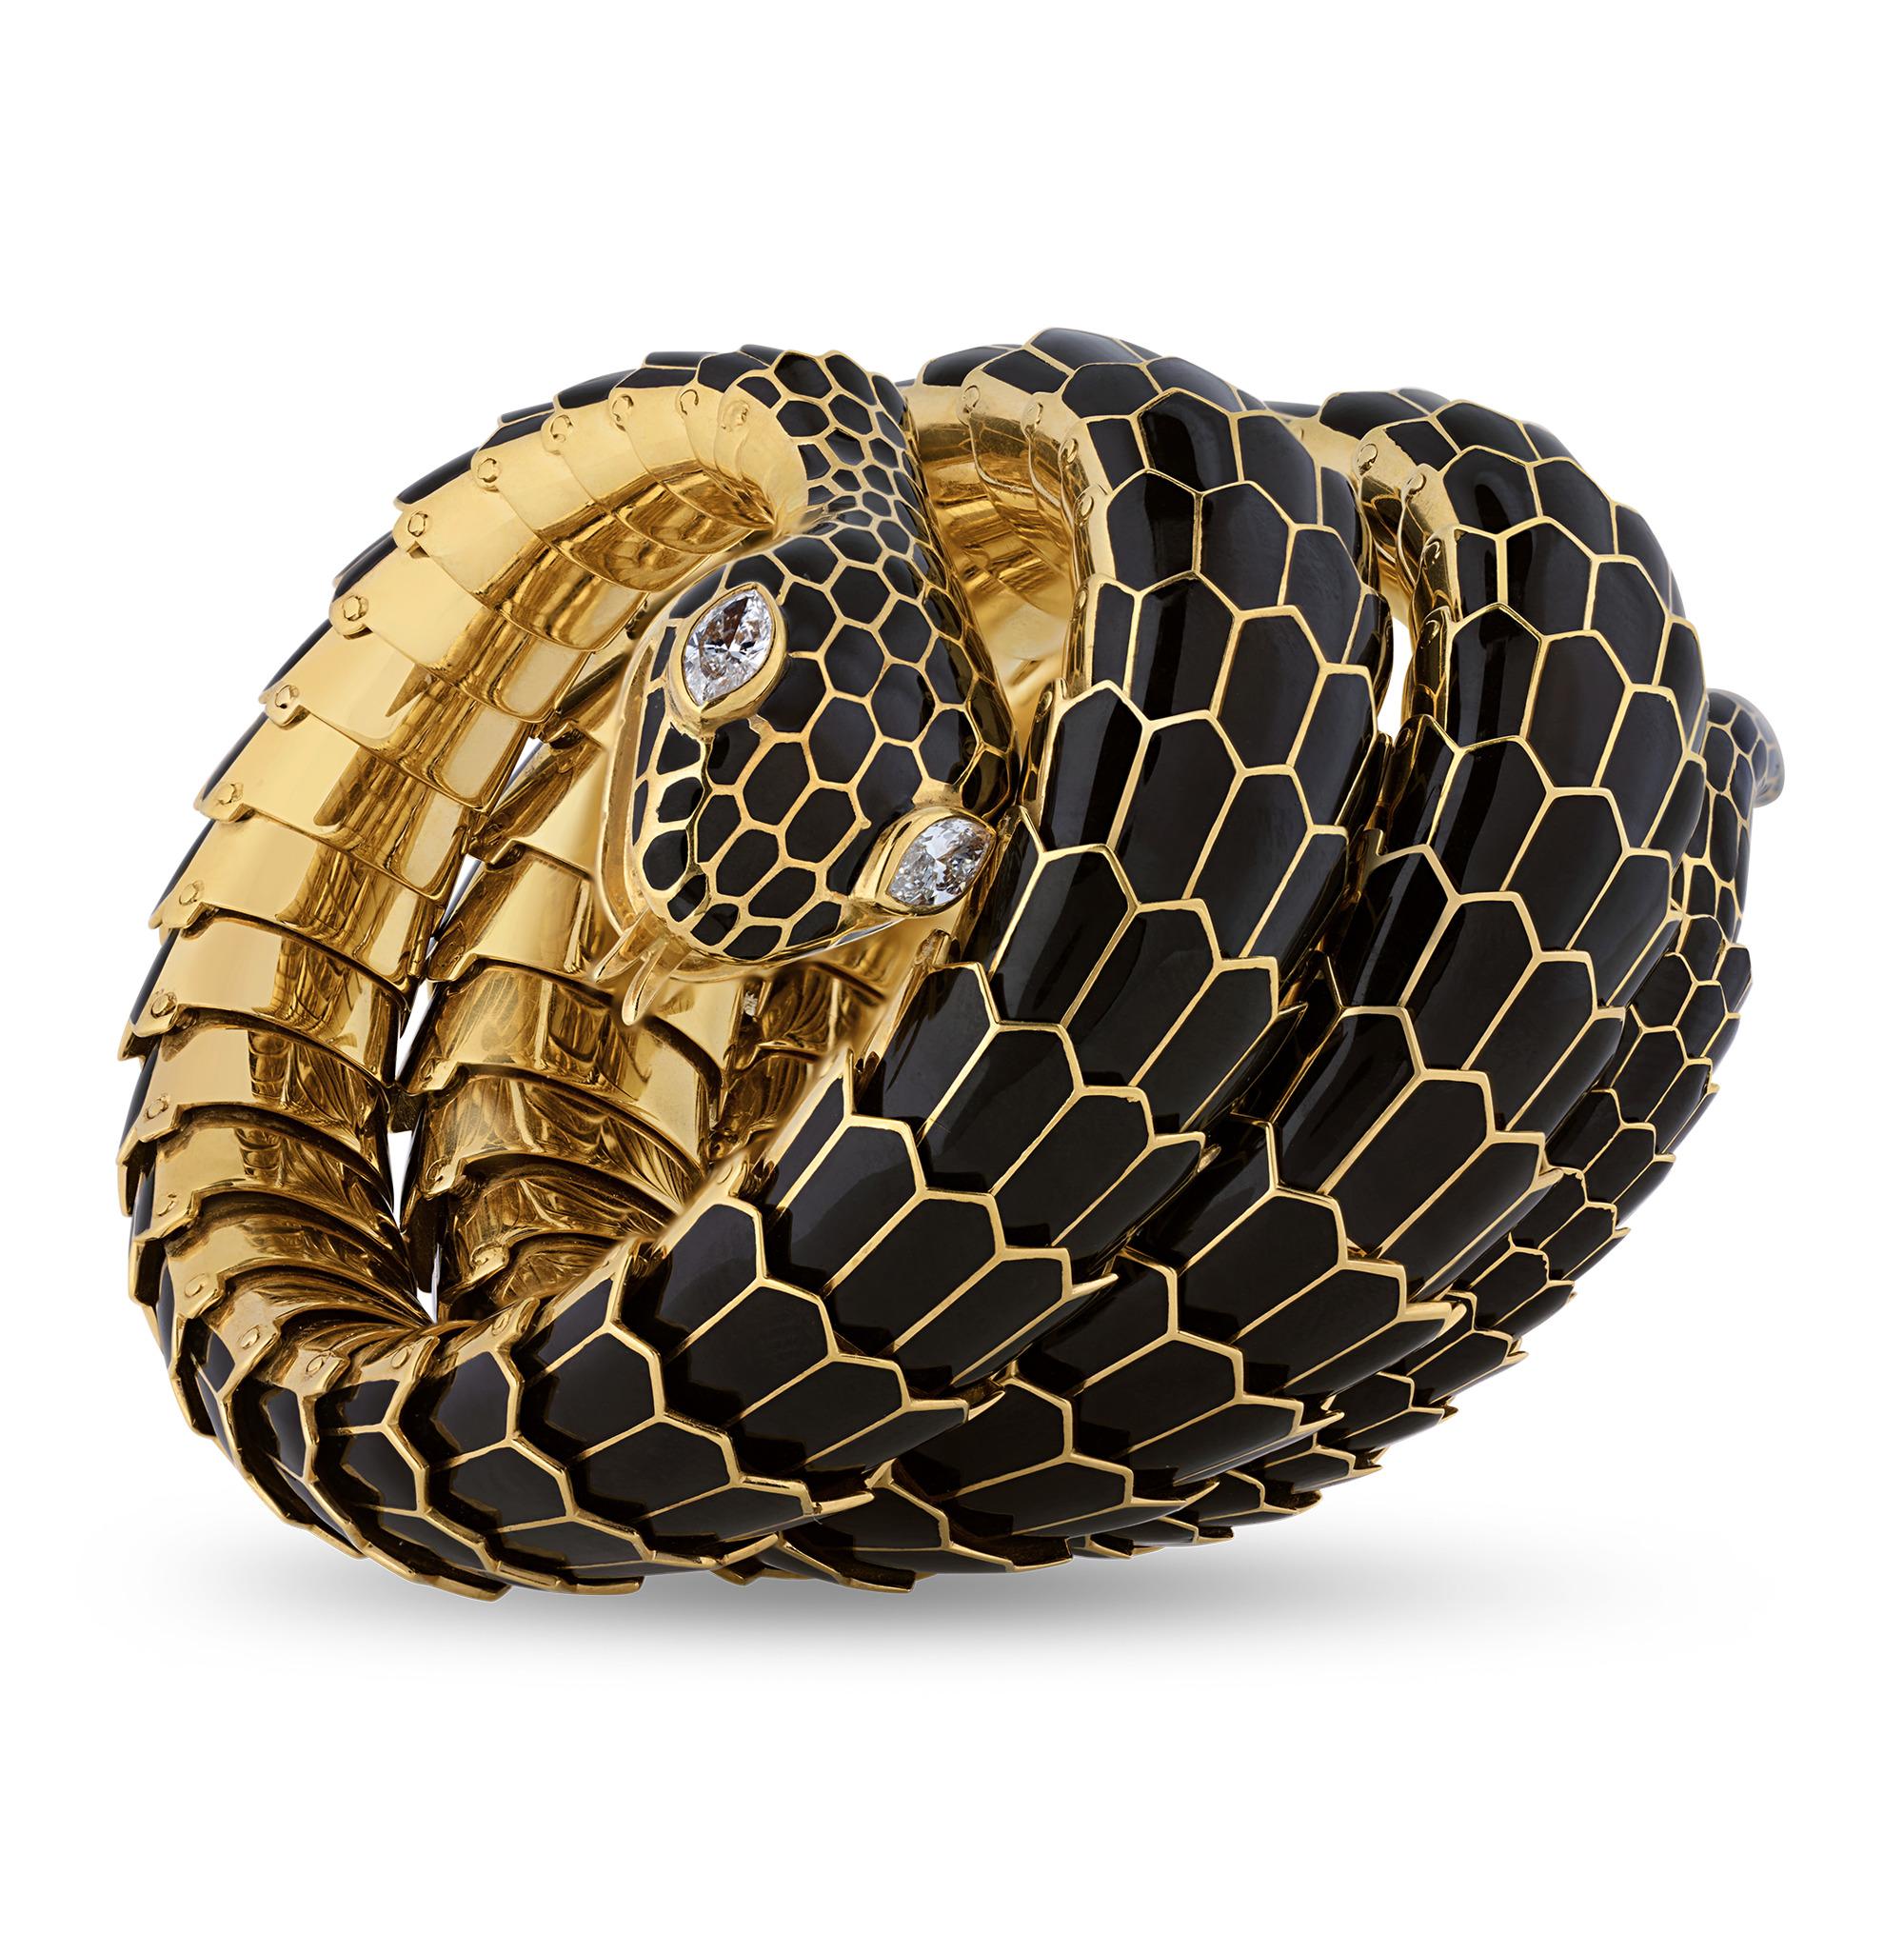 Dieser auffällige Vintage-Armreif hat die Form einer sich schlängelnden Schlange. Das handgefertigte Armband aus Gold und schwarzer Emaille simuliert perfekt die schuppige Haut des fesselnden Reptils, und die Augen der Schlange bestehen aus